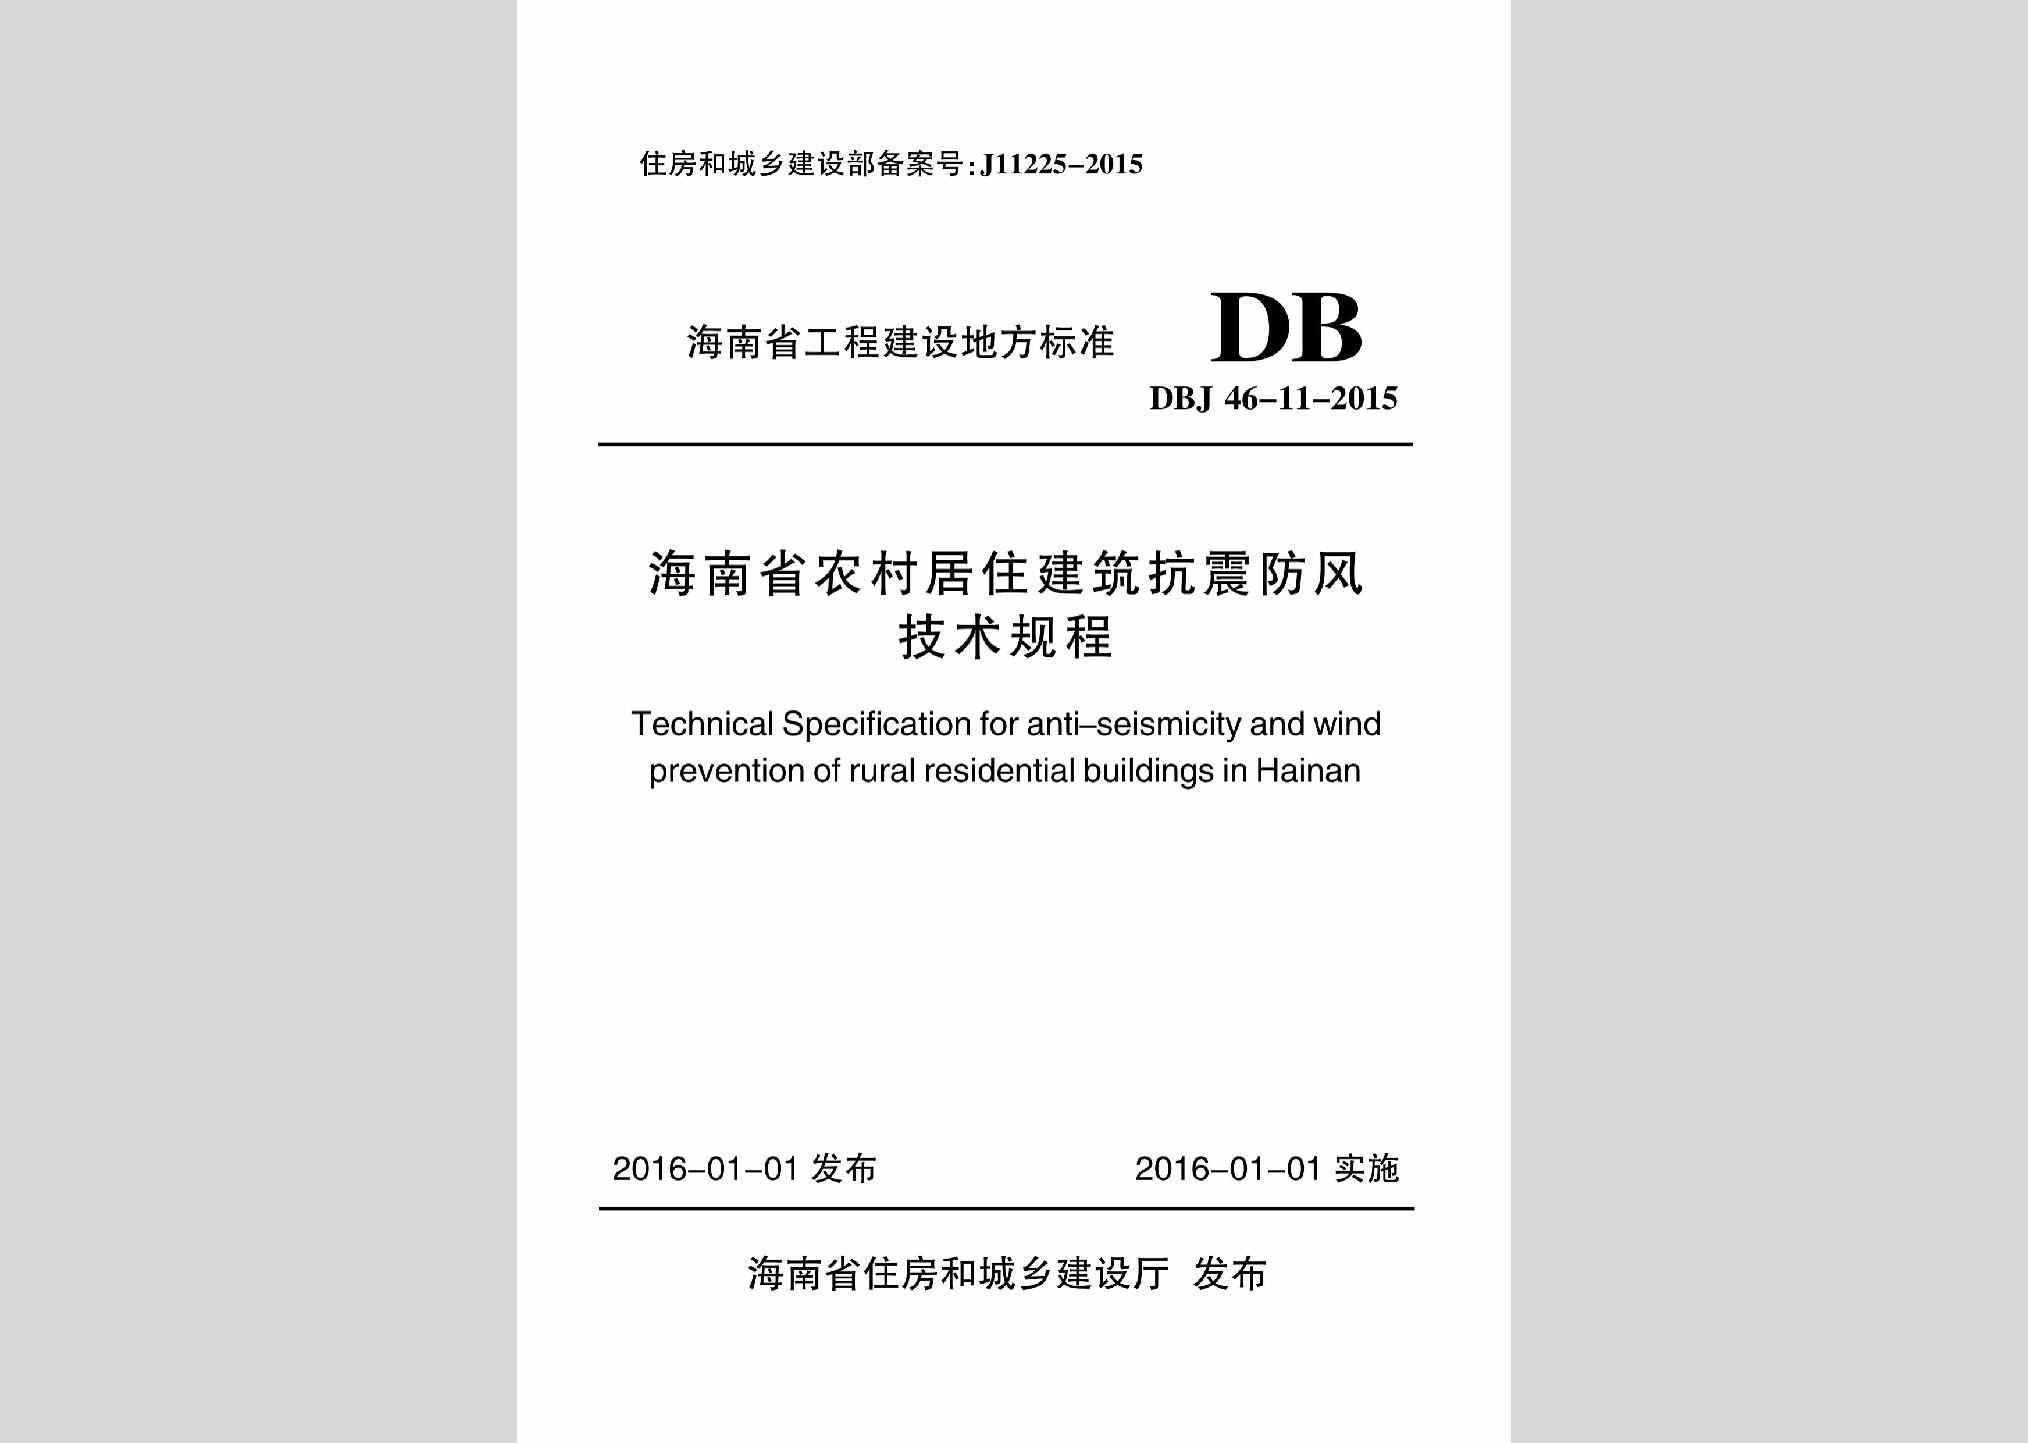 DBJ46-11-2015：海南省农村居住建筑抗震防风技术规程